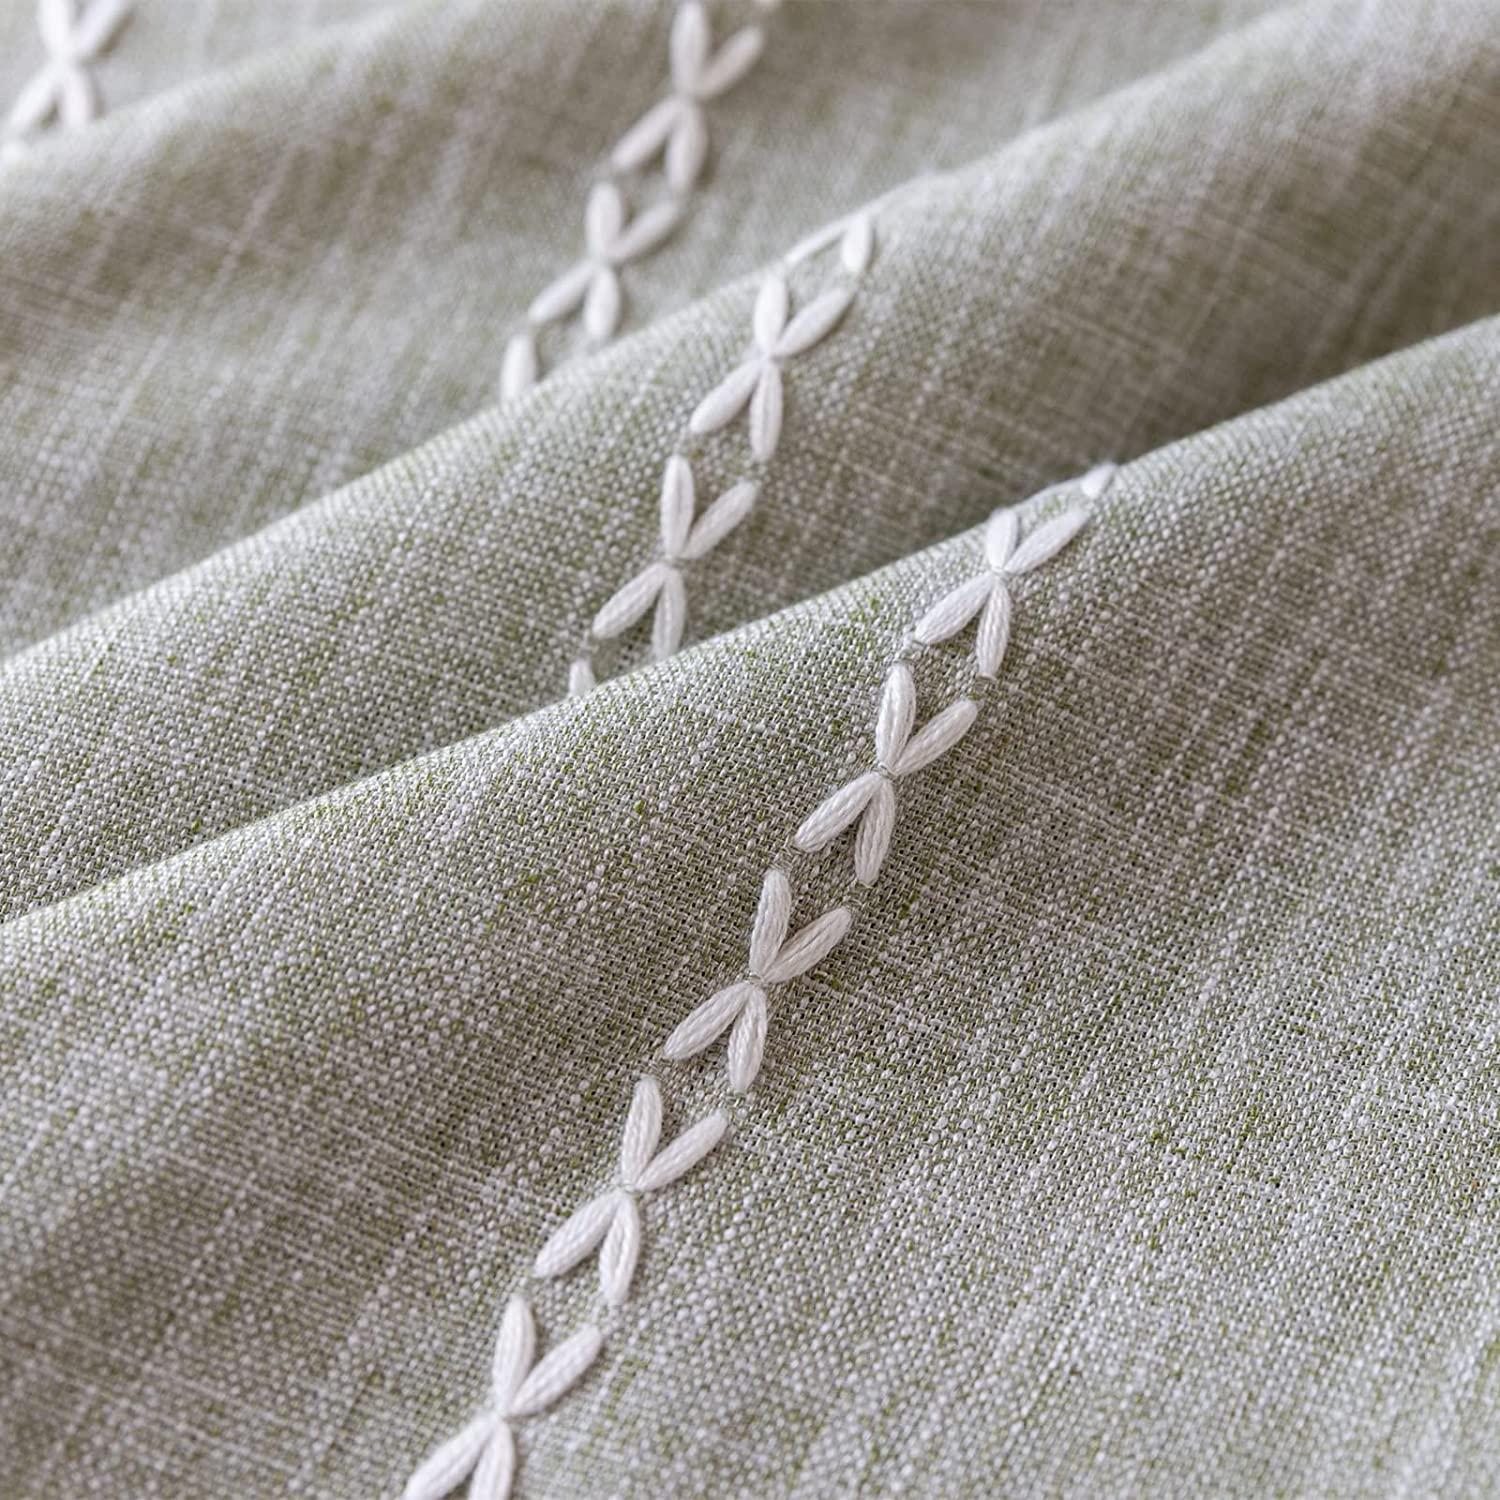 Hazy Gray Fabric - Stitchery X-Press